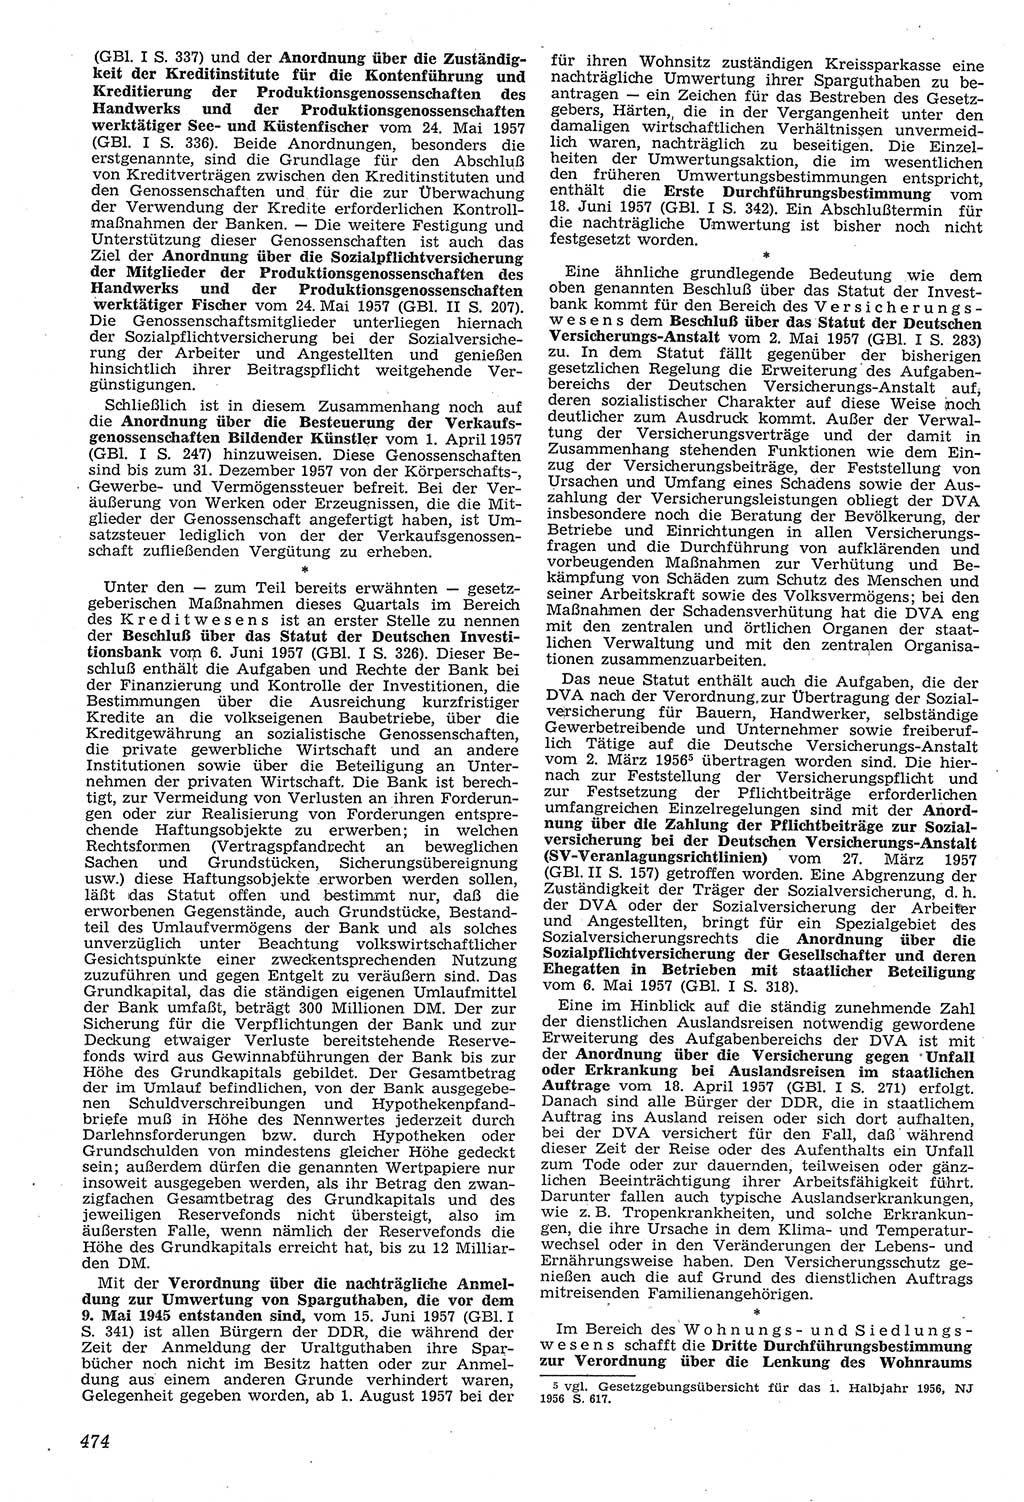 Neue Justiz (NJ), Zeitschrift für Recht und Rechtswissenschaft [Deutsche Demokratische Republik (DDR)], 11. Jahrgang 1957, Seite 474 (NJ DDR 1957, S. 474)